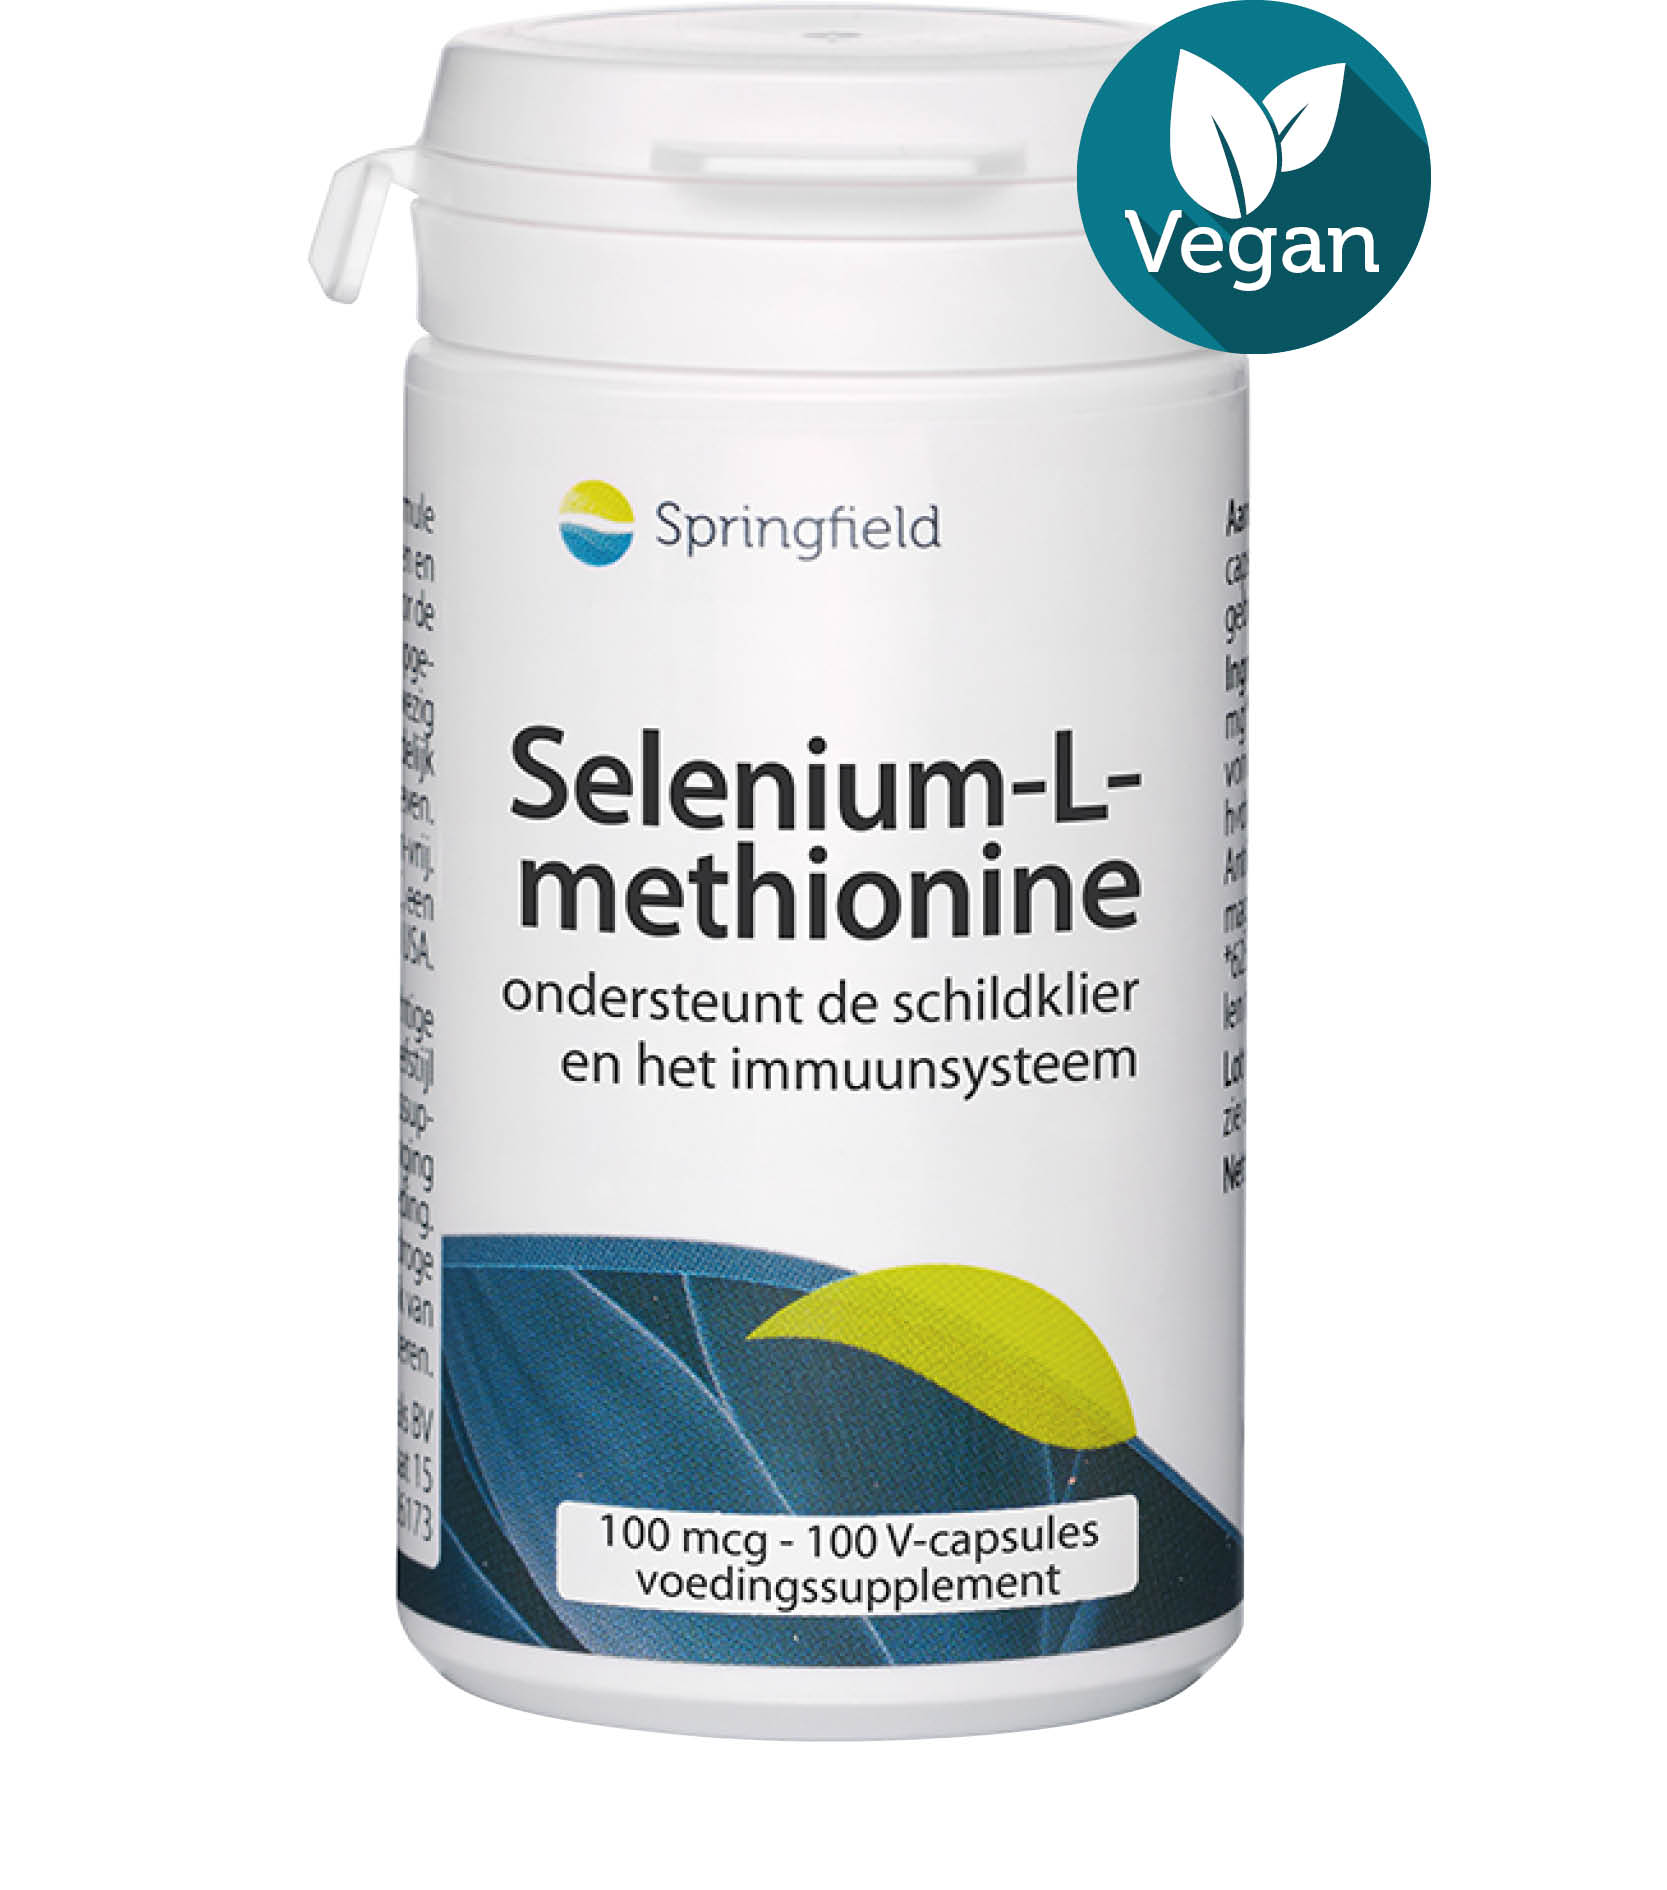 Selenium-L-methionine 100 mcg vegan